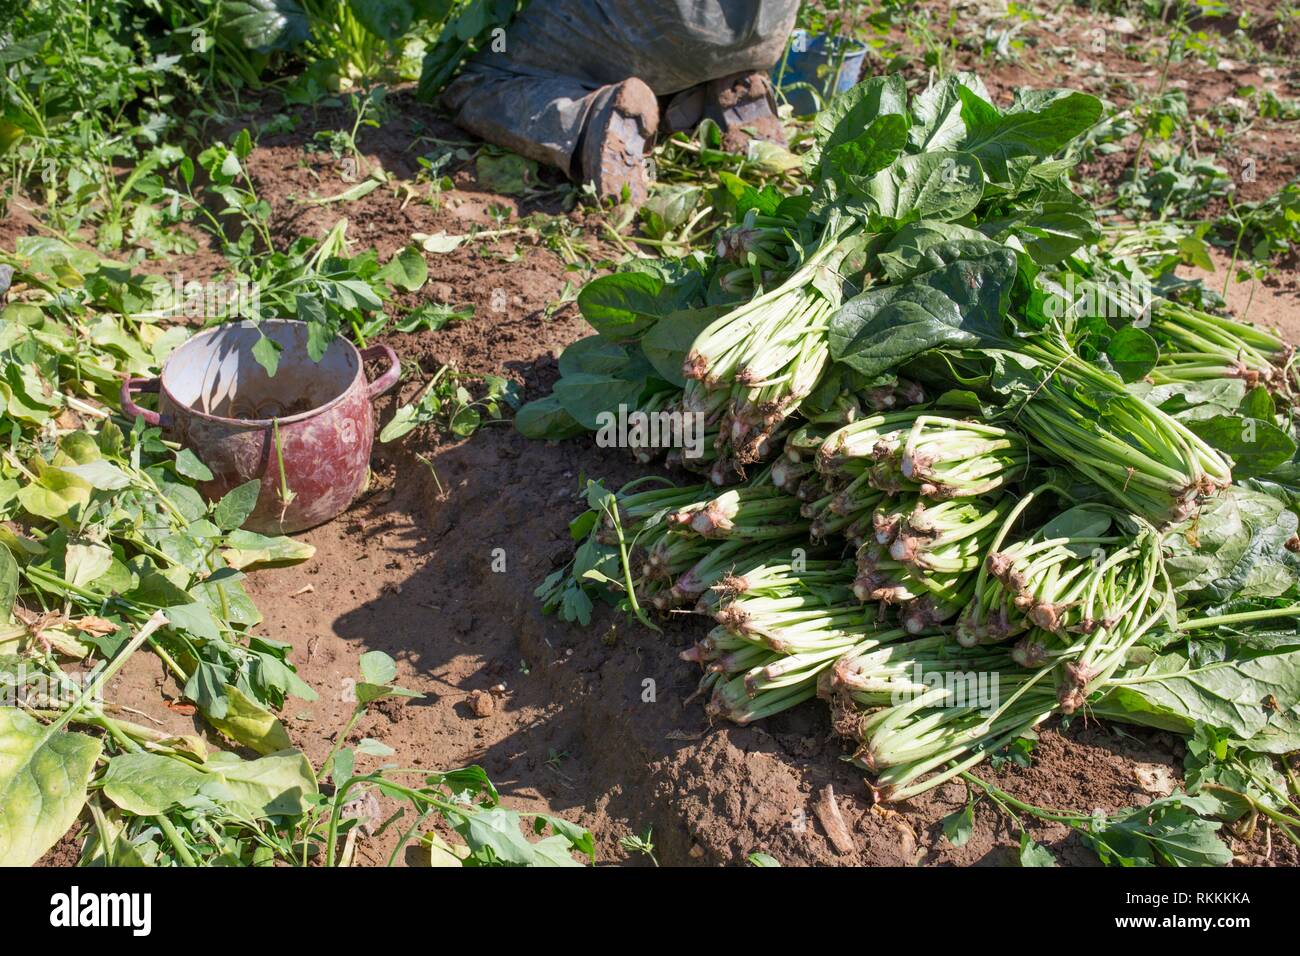 Los trabajadores recogiendo spinachs locales granja ecológica. La agricultura sostenible. Foto de stock